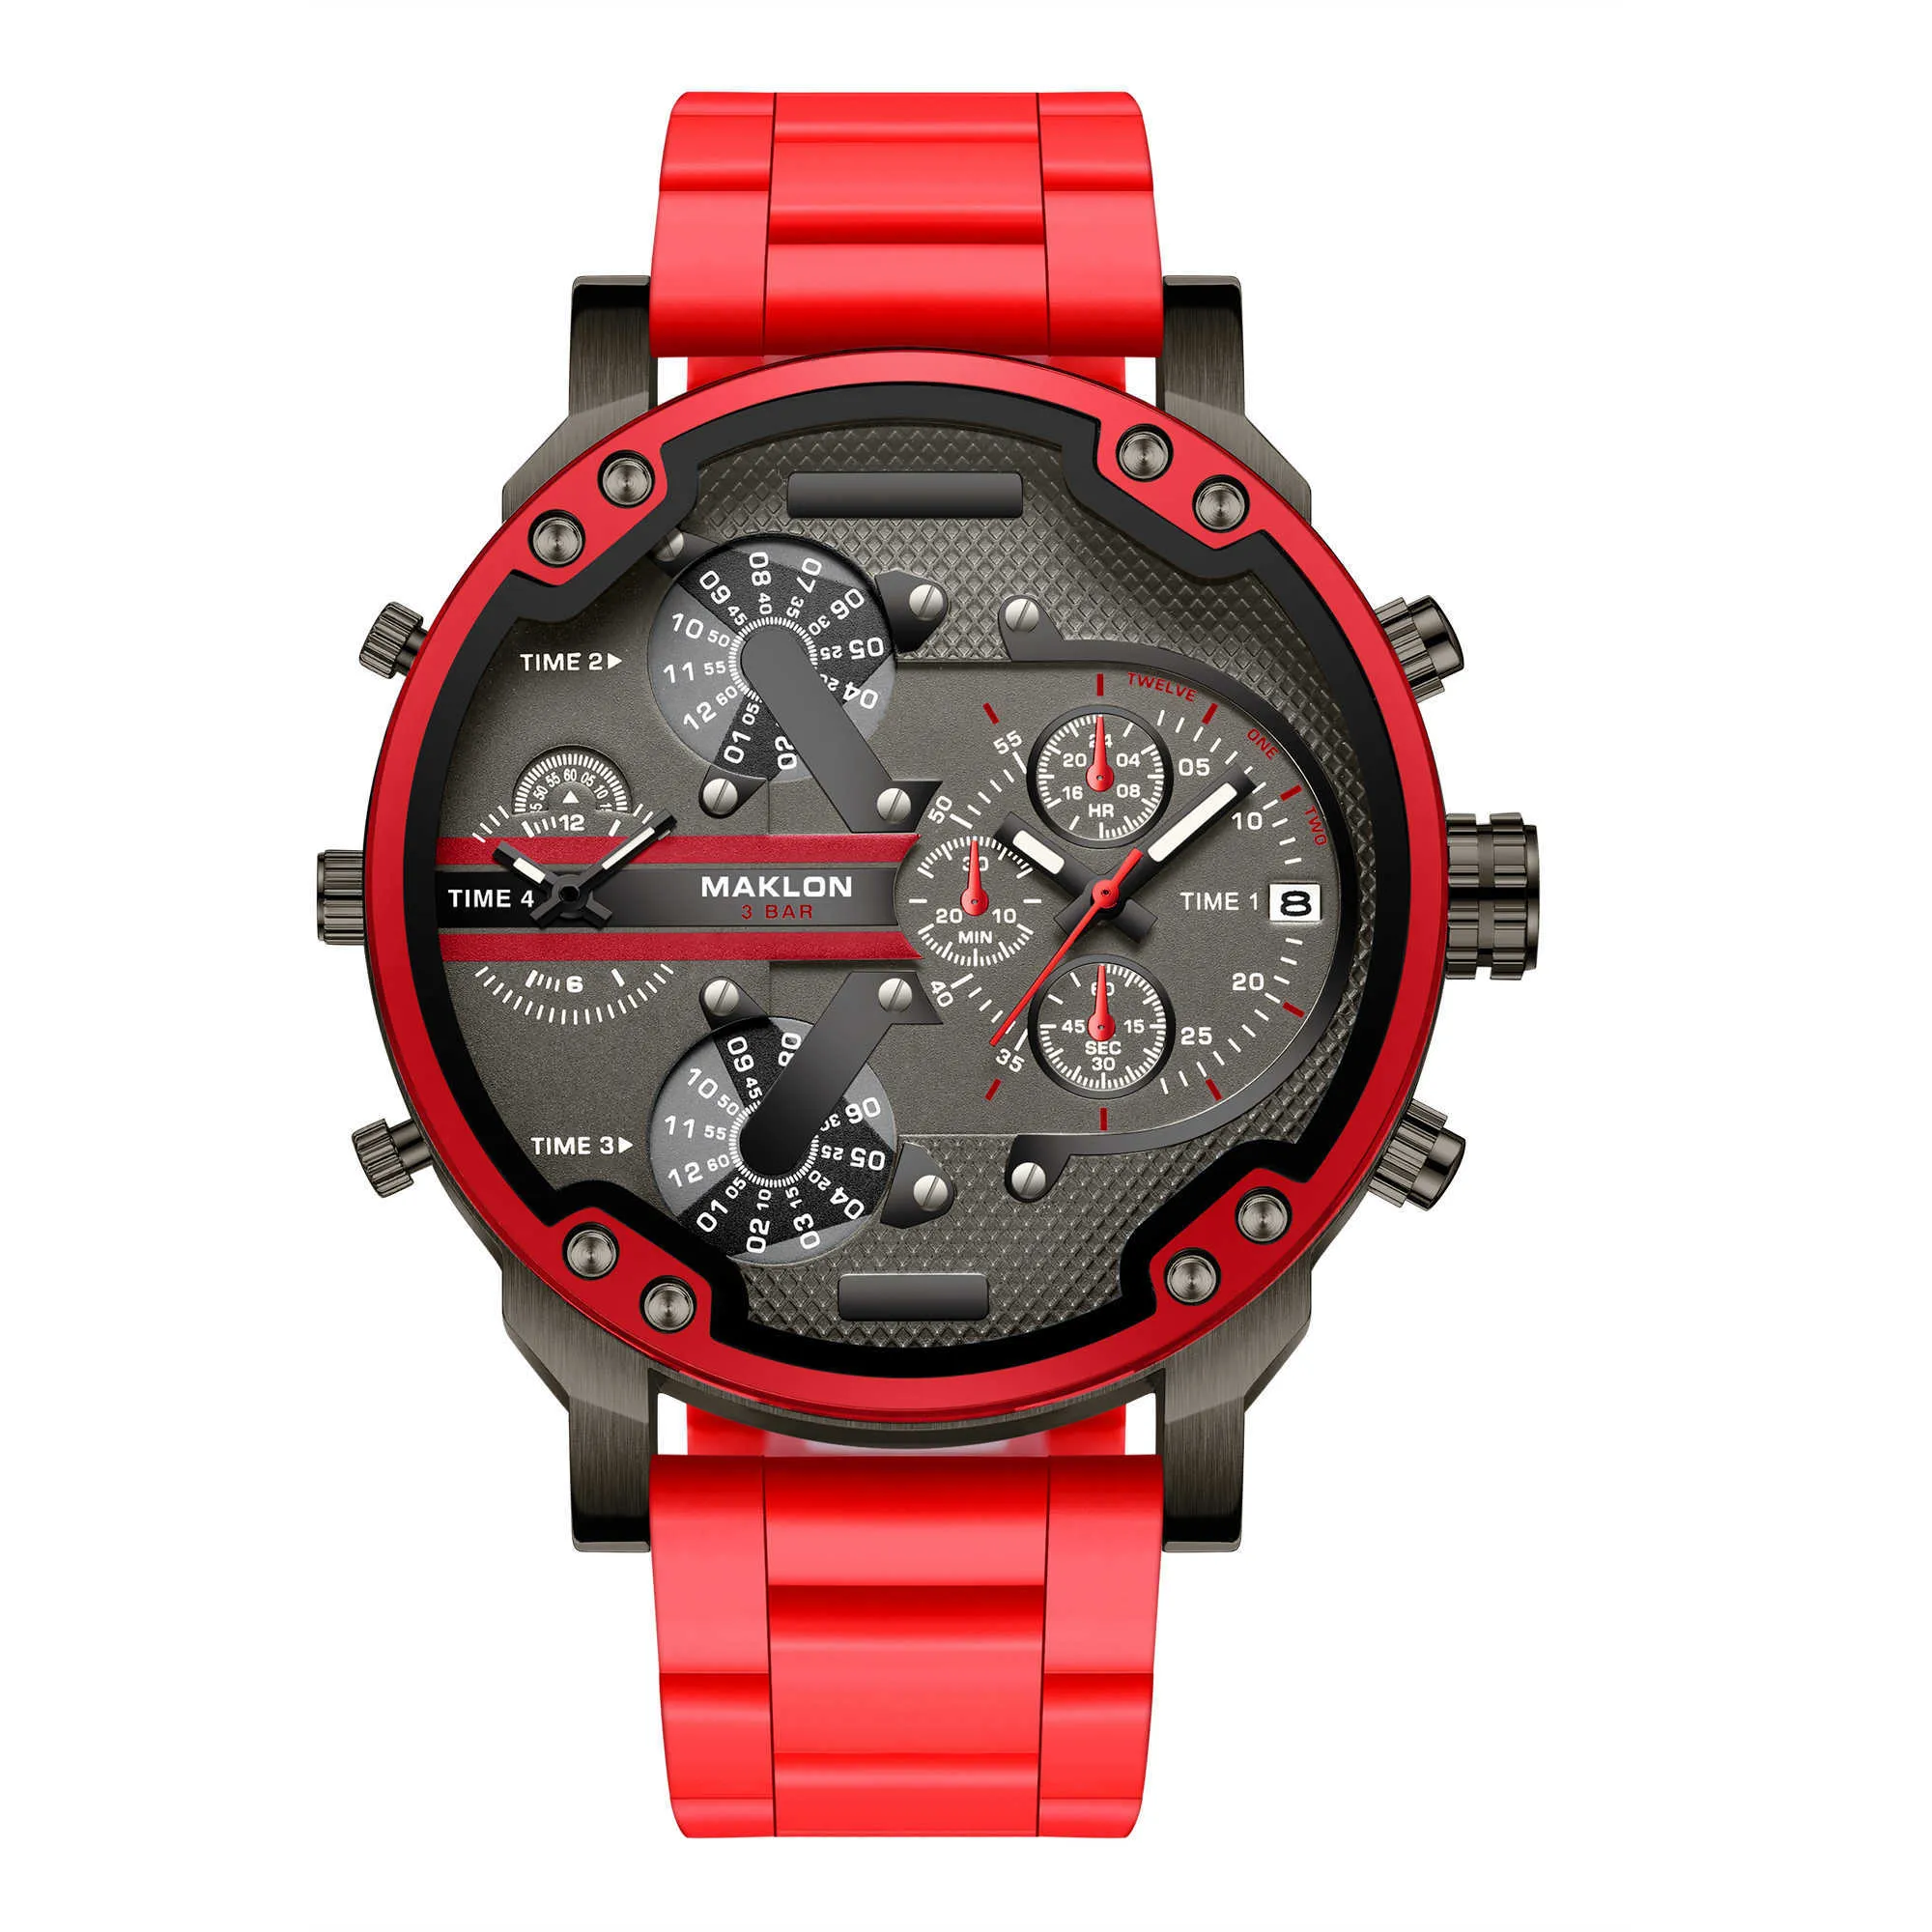 Dz7 2019 горячие продажи мужские часы лучший бренд dz роскошные модные кварцевые часы военные спортивные наручные часы Прямая поставка X0625